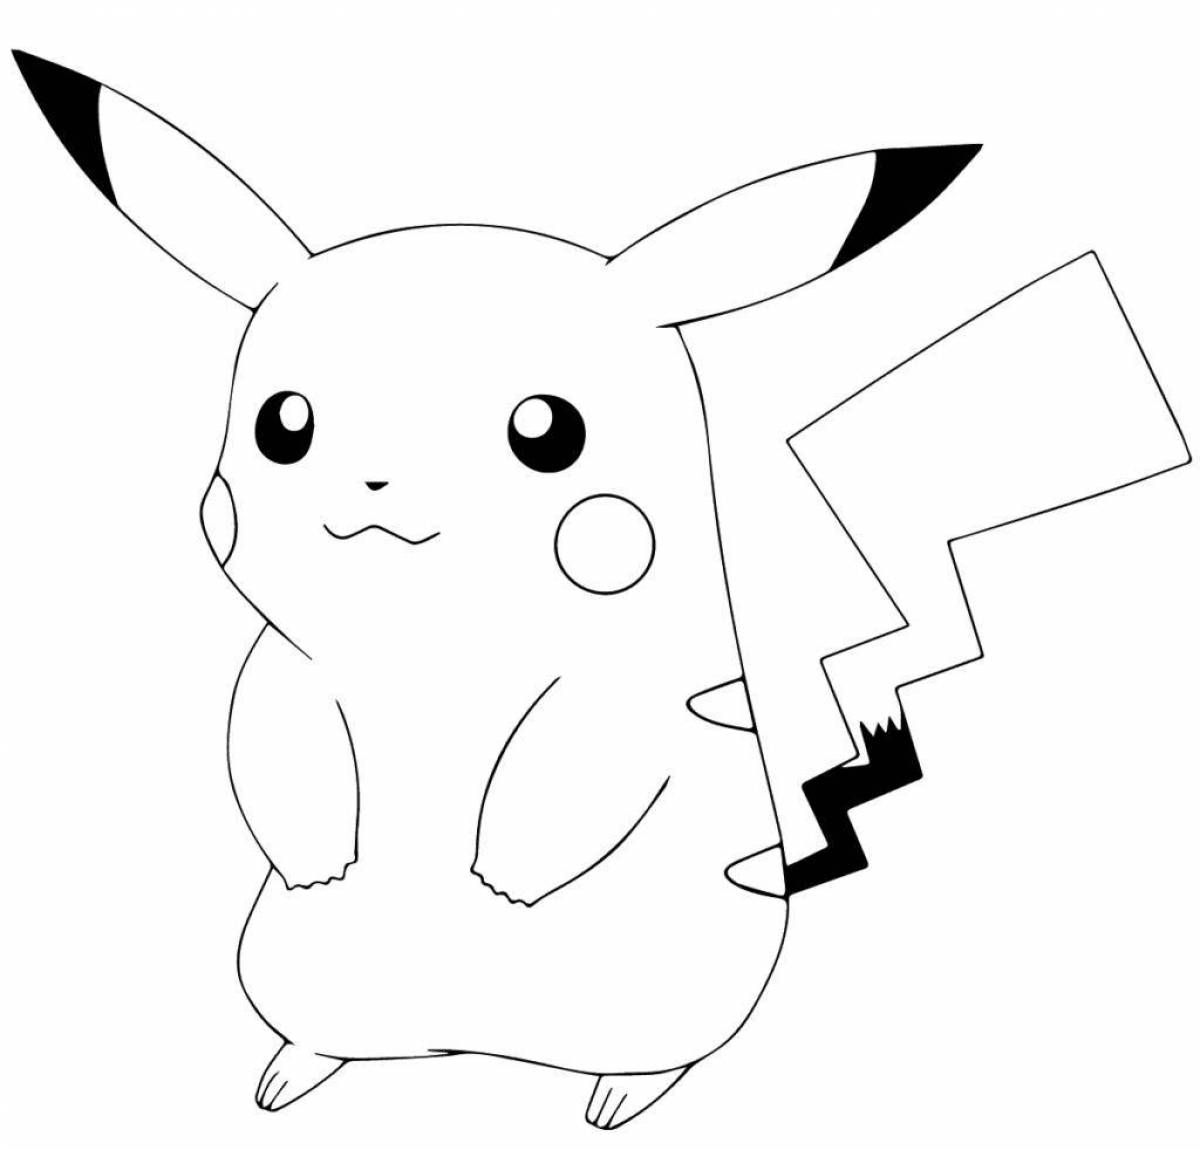 Pikachu fun coloring